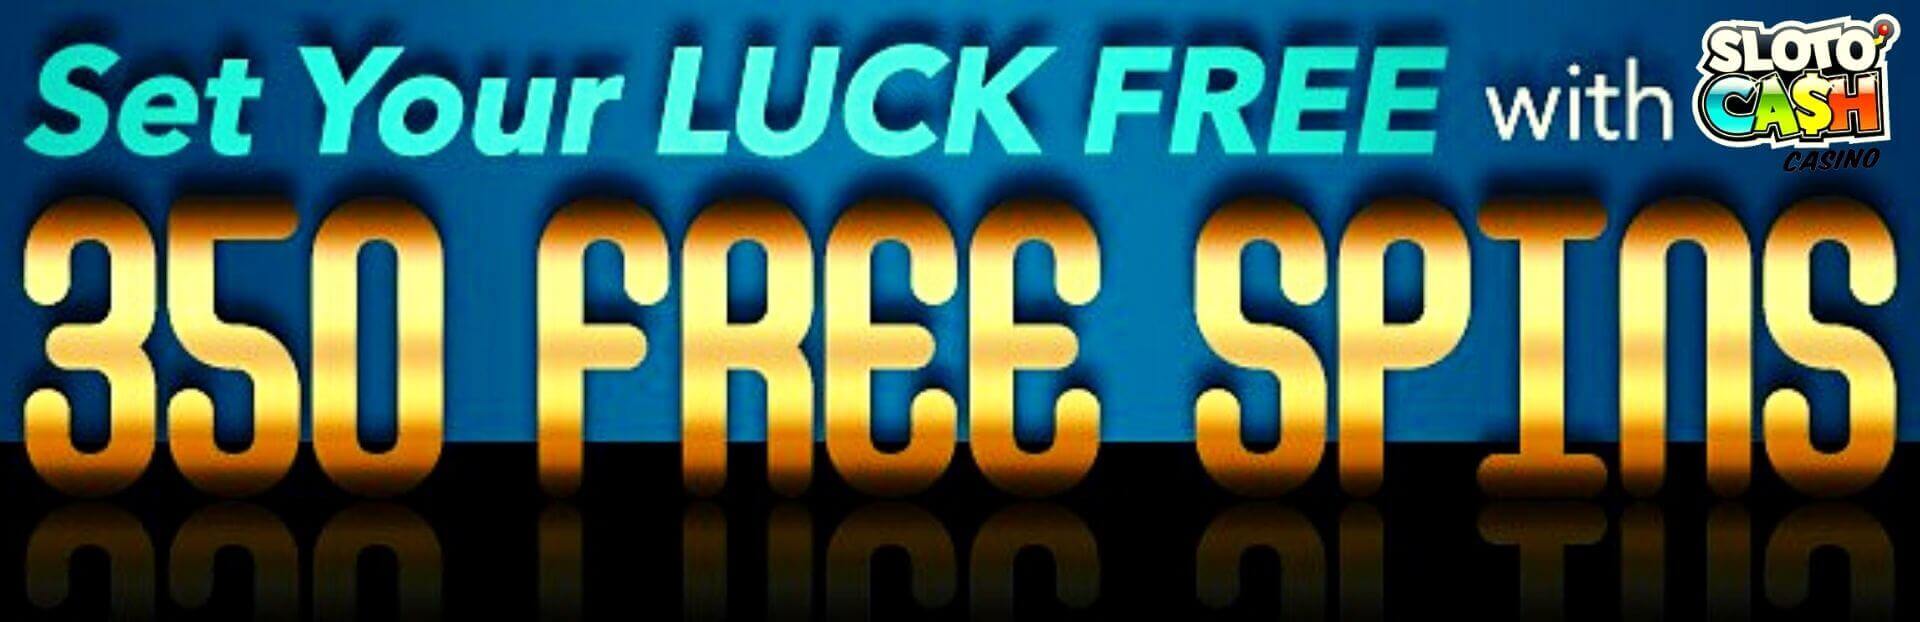 sloto cash casino exclusive bonus 350 free spins